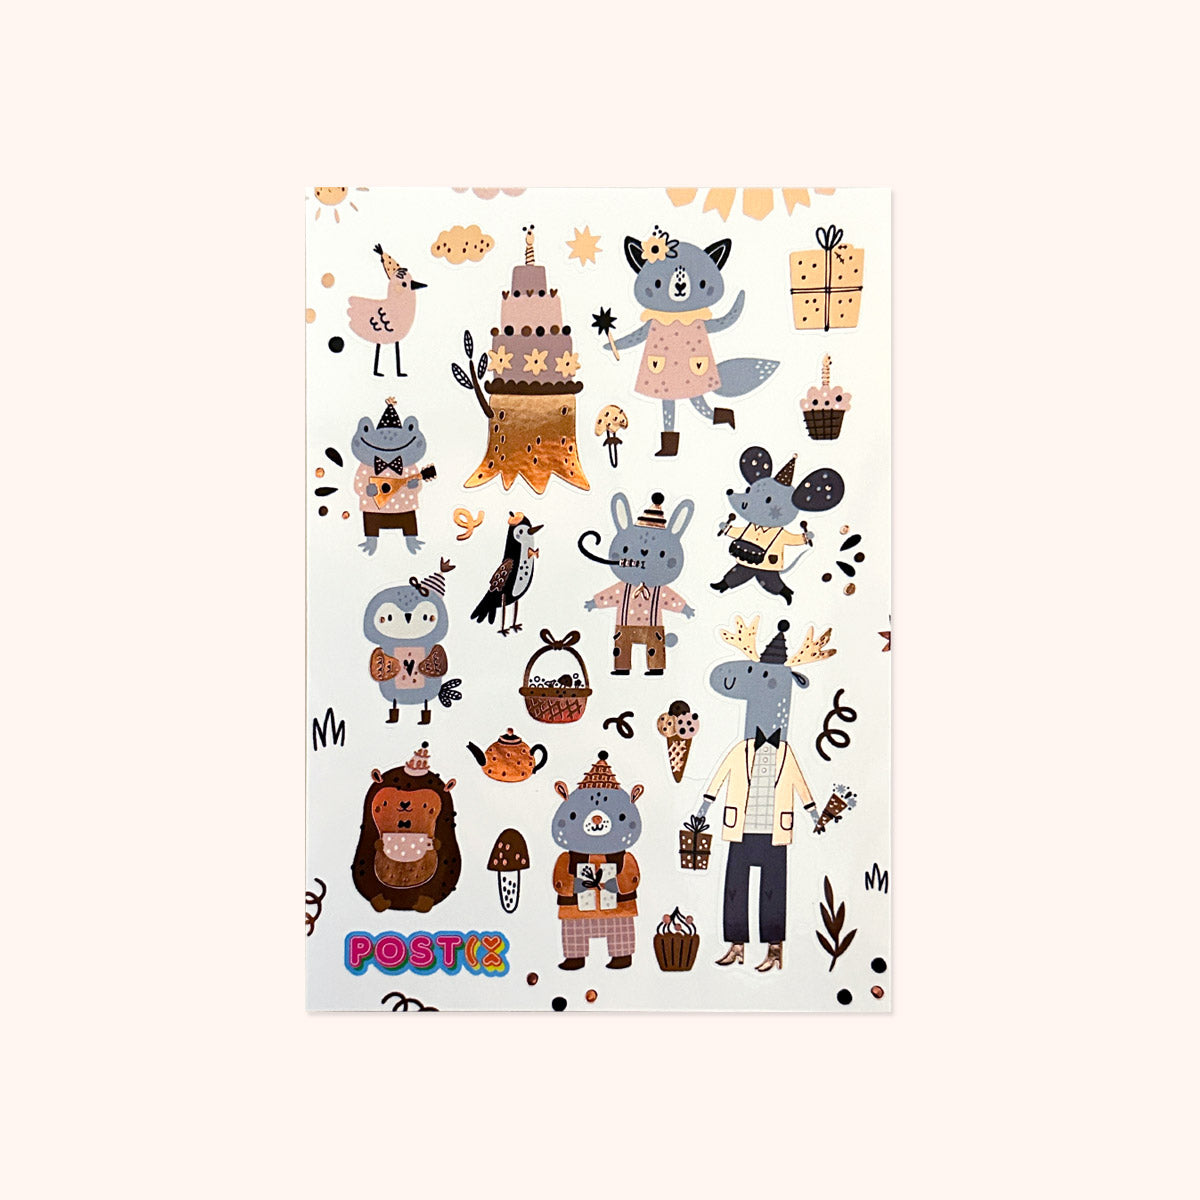 TownStix Animal Sticker Set – 10 Designs, 20 Sheets, 200 Stickers